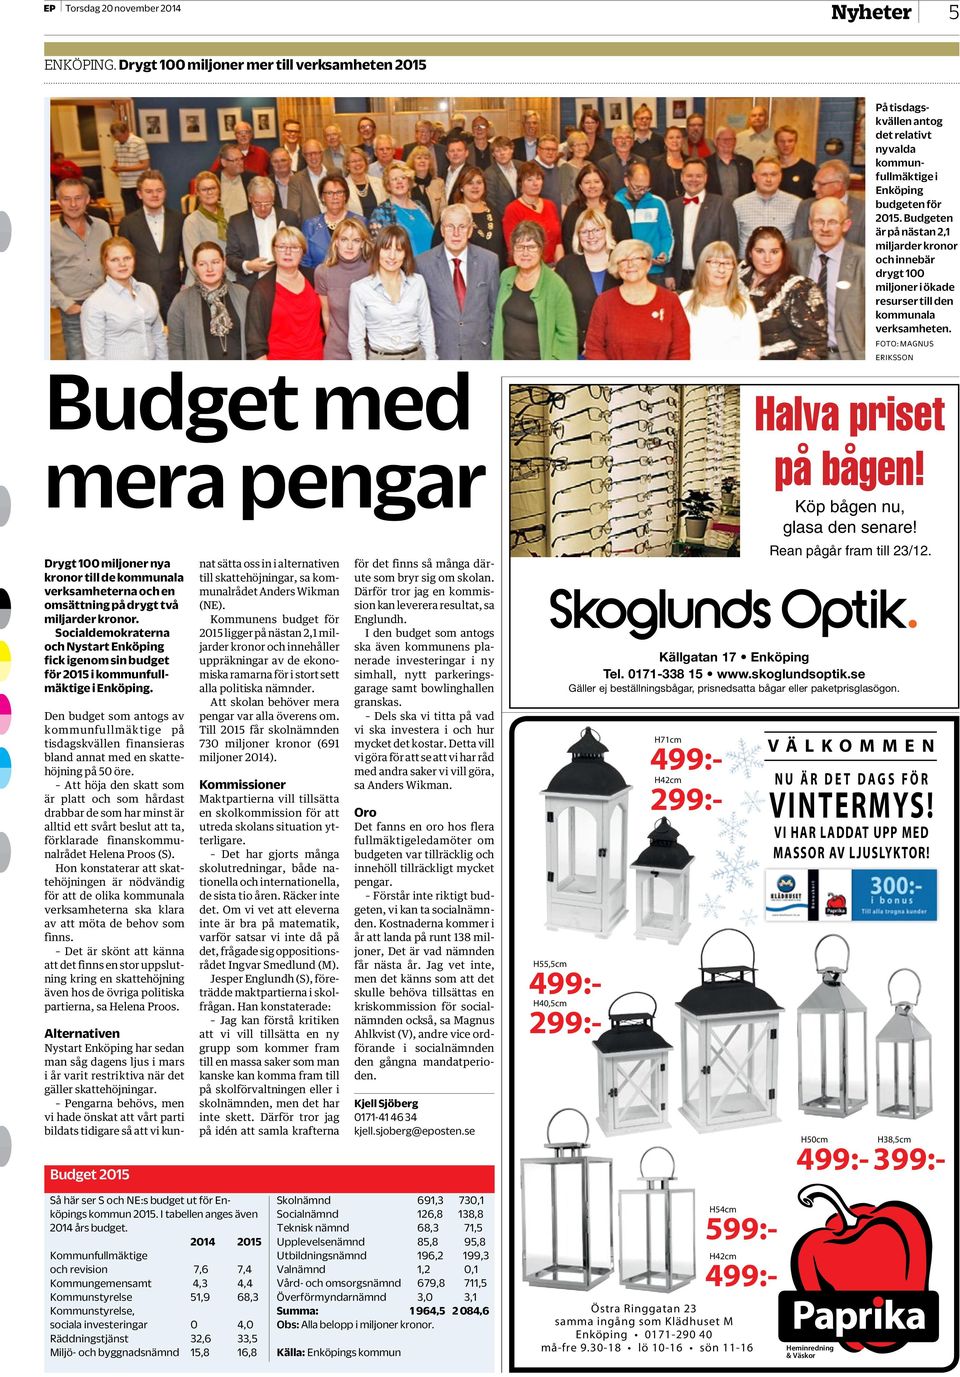 Socialdemokraterna och Nystart Enköping fick igenom sin budget för 05 i kommunfullmäktige i Enköping.